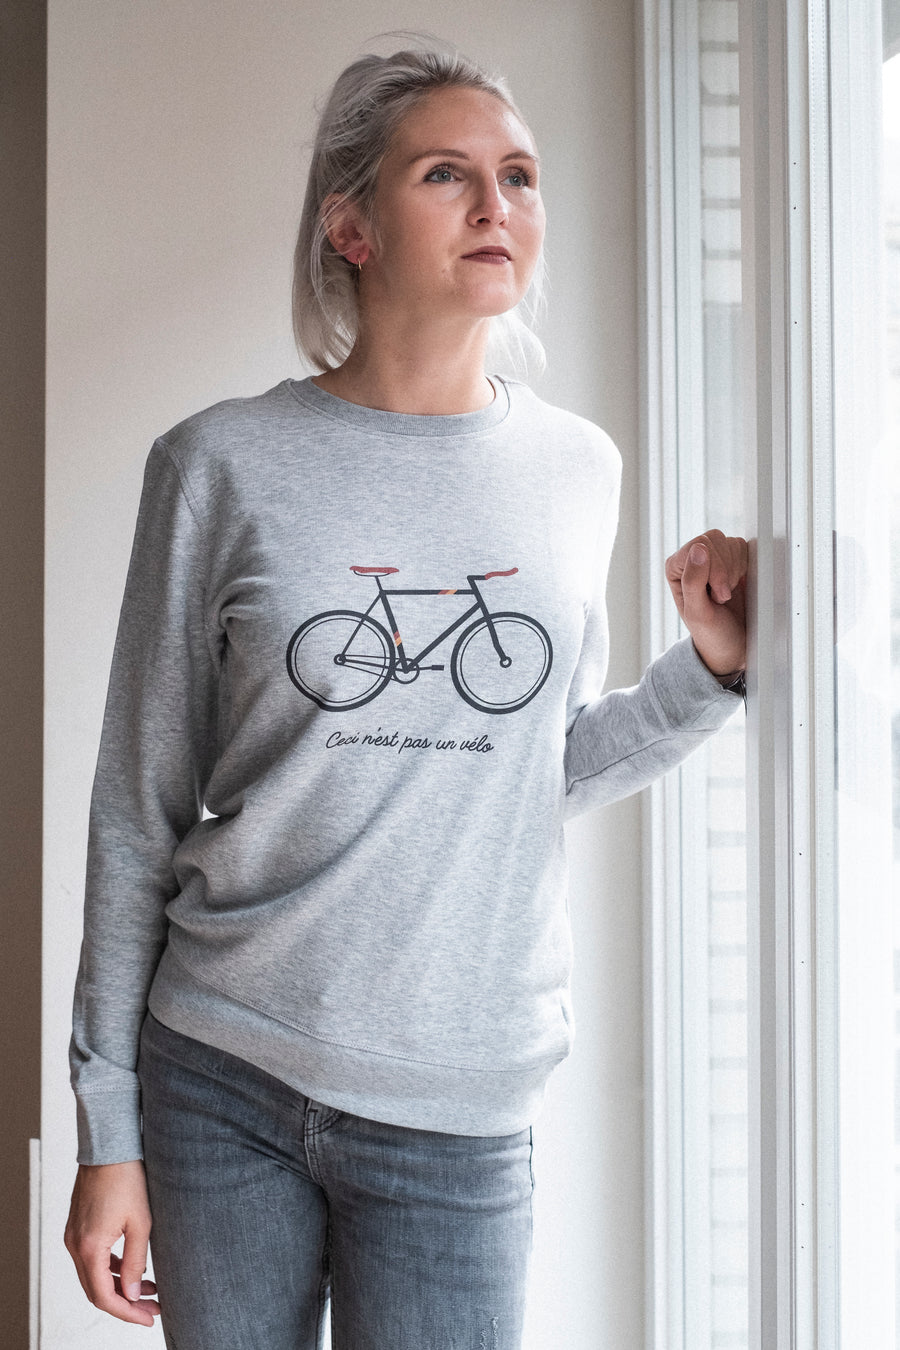 Ceci n'est pas un vélo Sweater - Joh Clothing